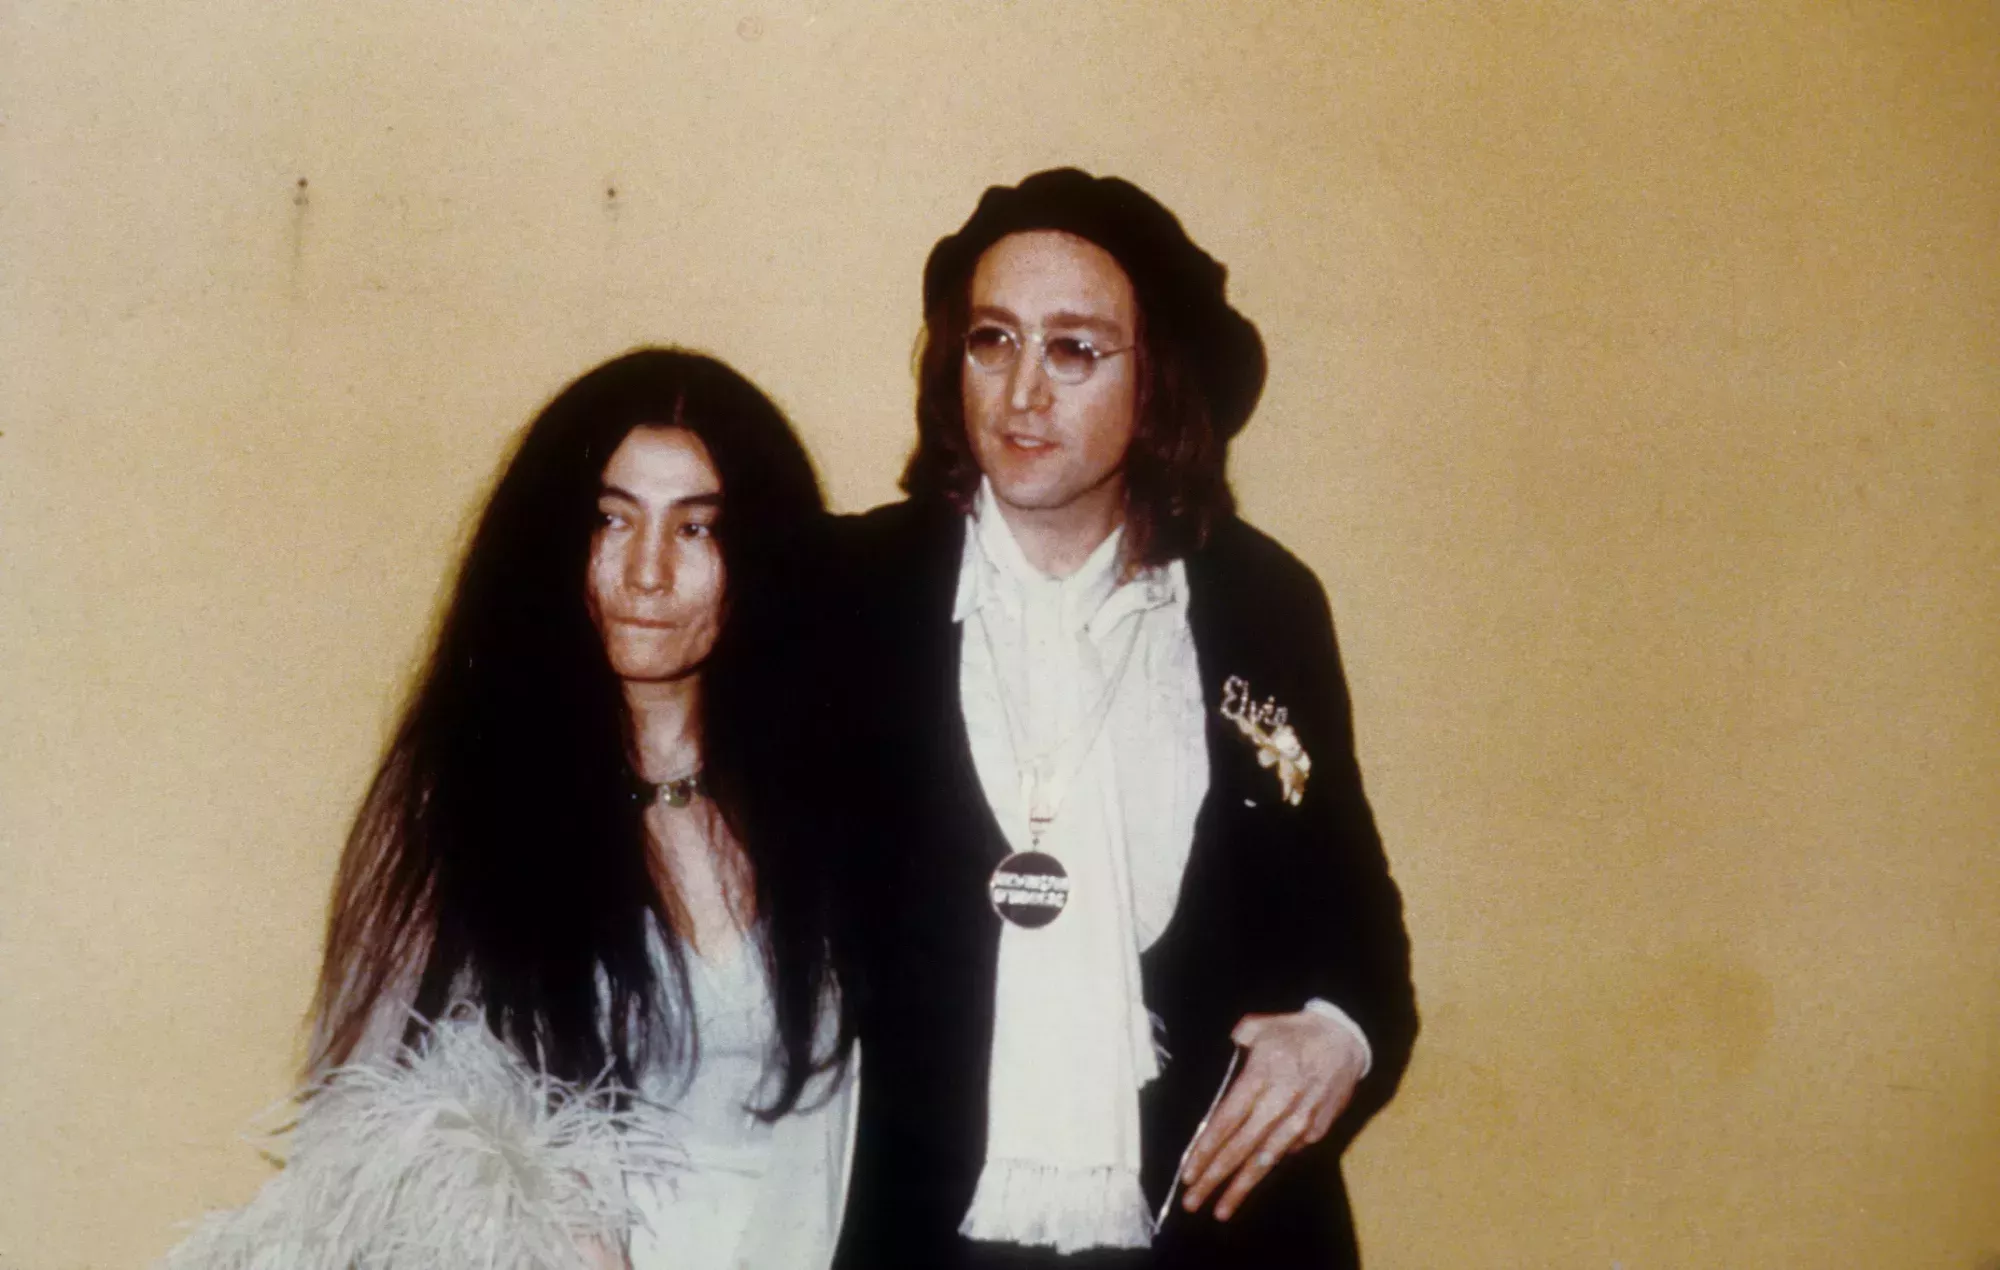 Un nuevo libro sobre los Beatles afirma que Yoko Ono enseñó a John Lennon a consumir heroína